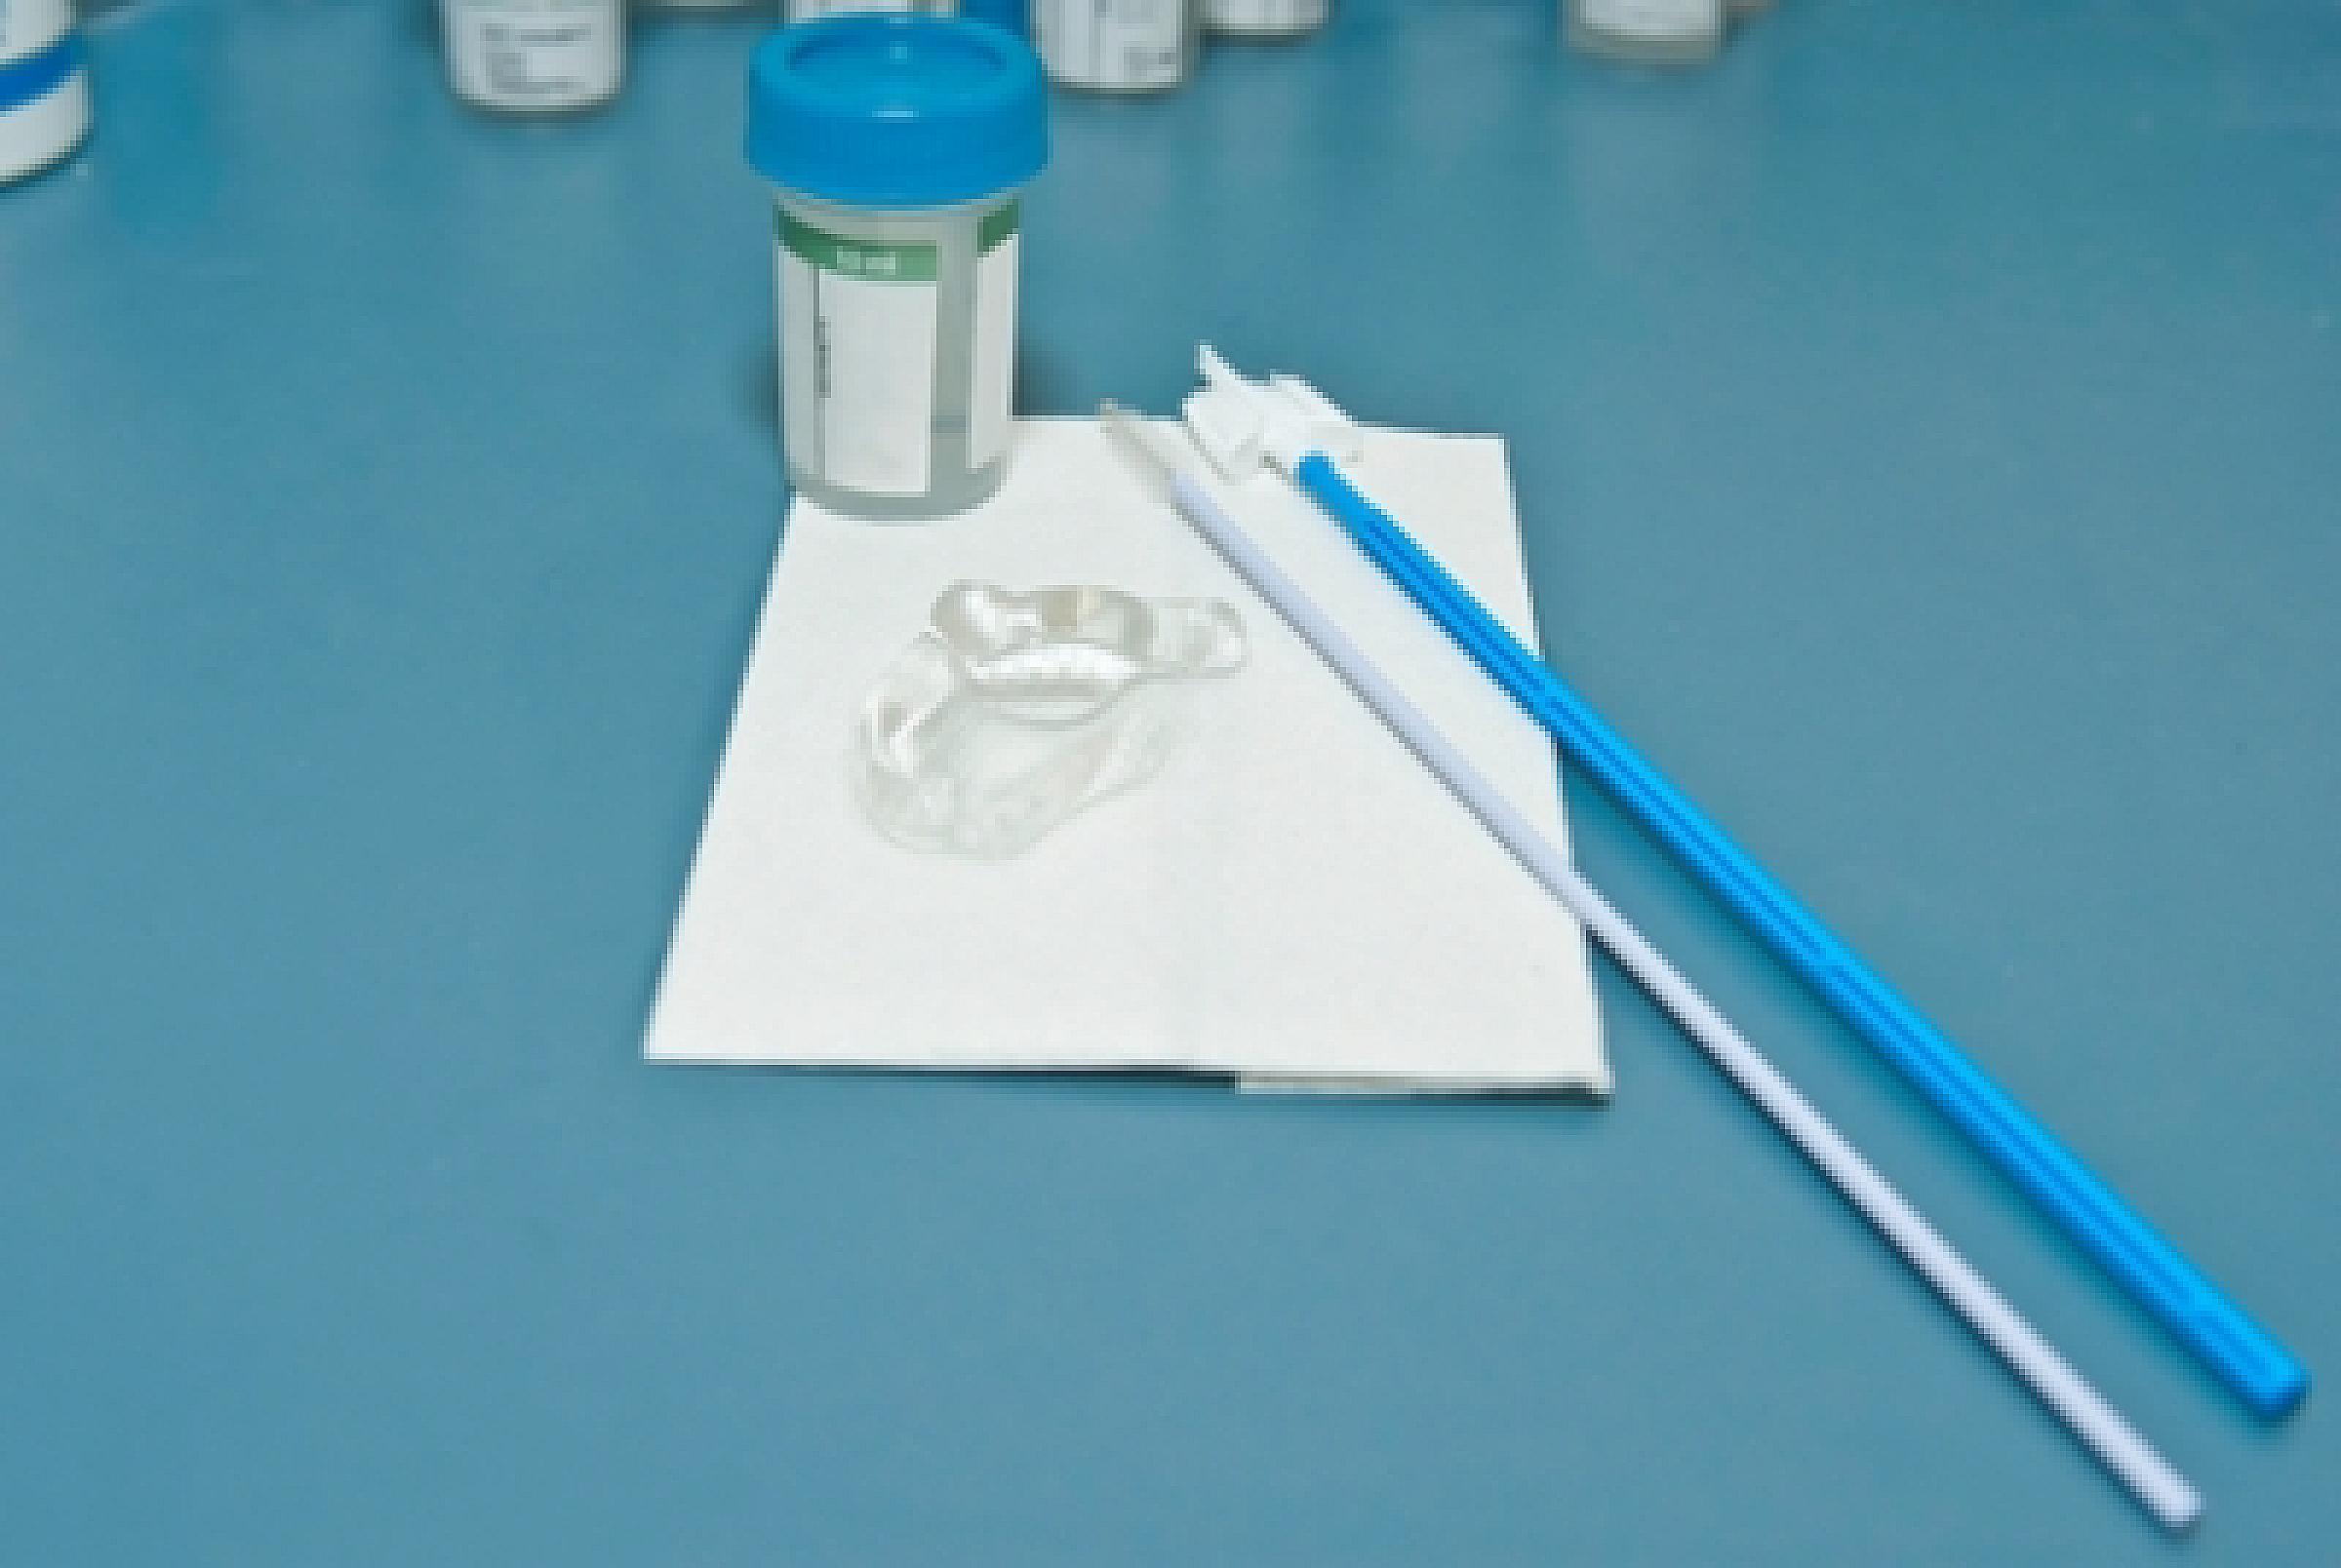 Pap smear test